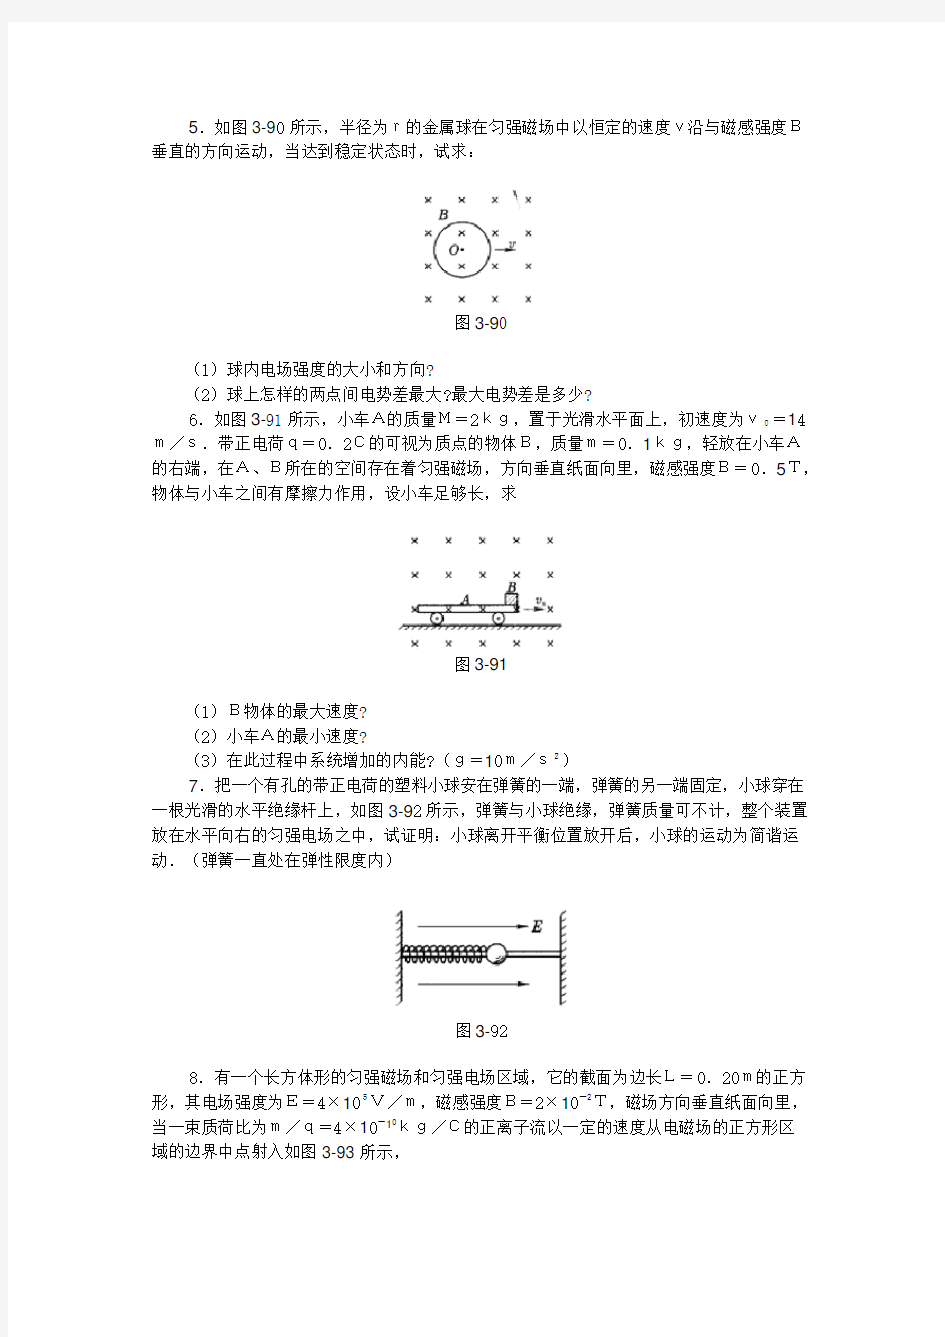 高中物理经典电学计算题总结(试题及答案)